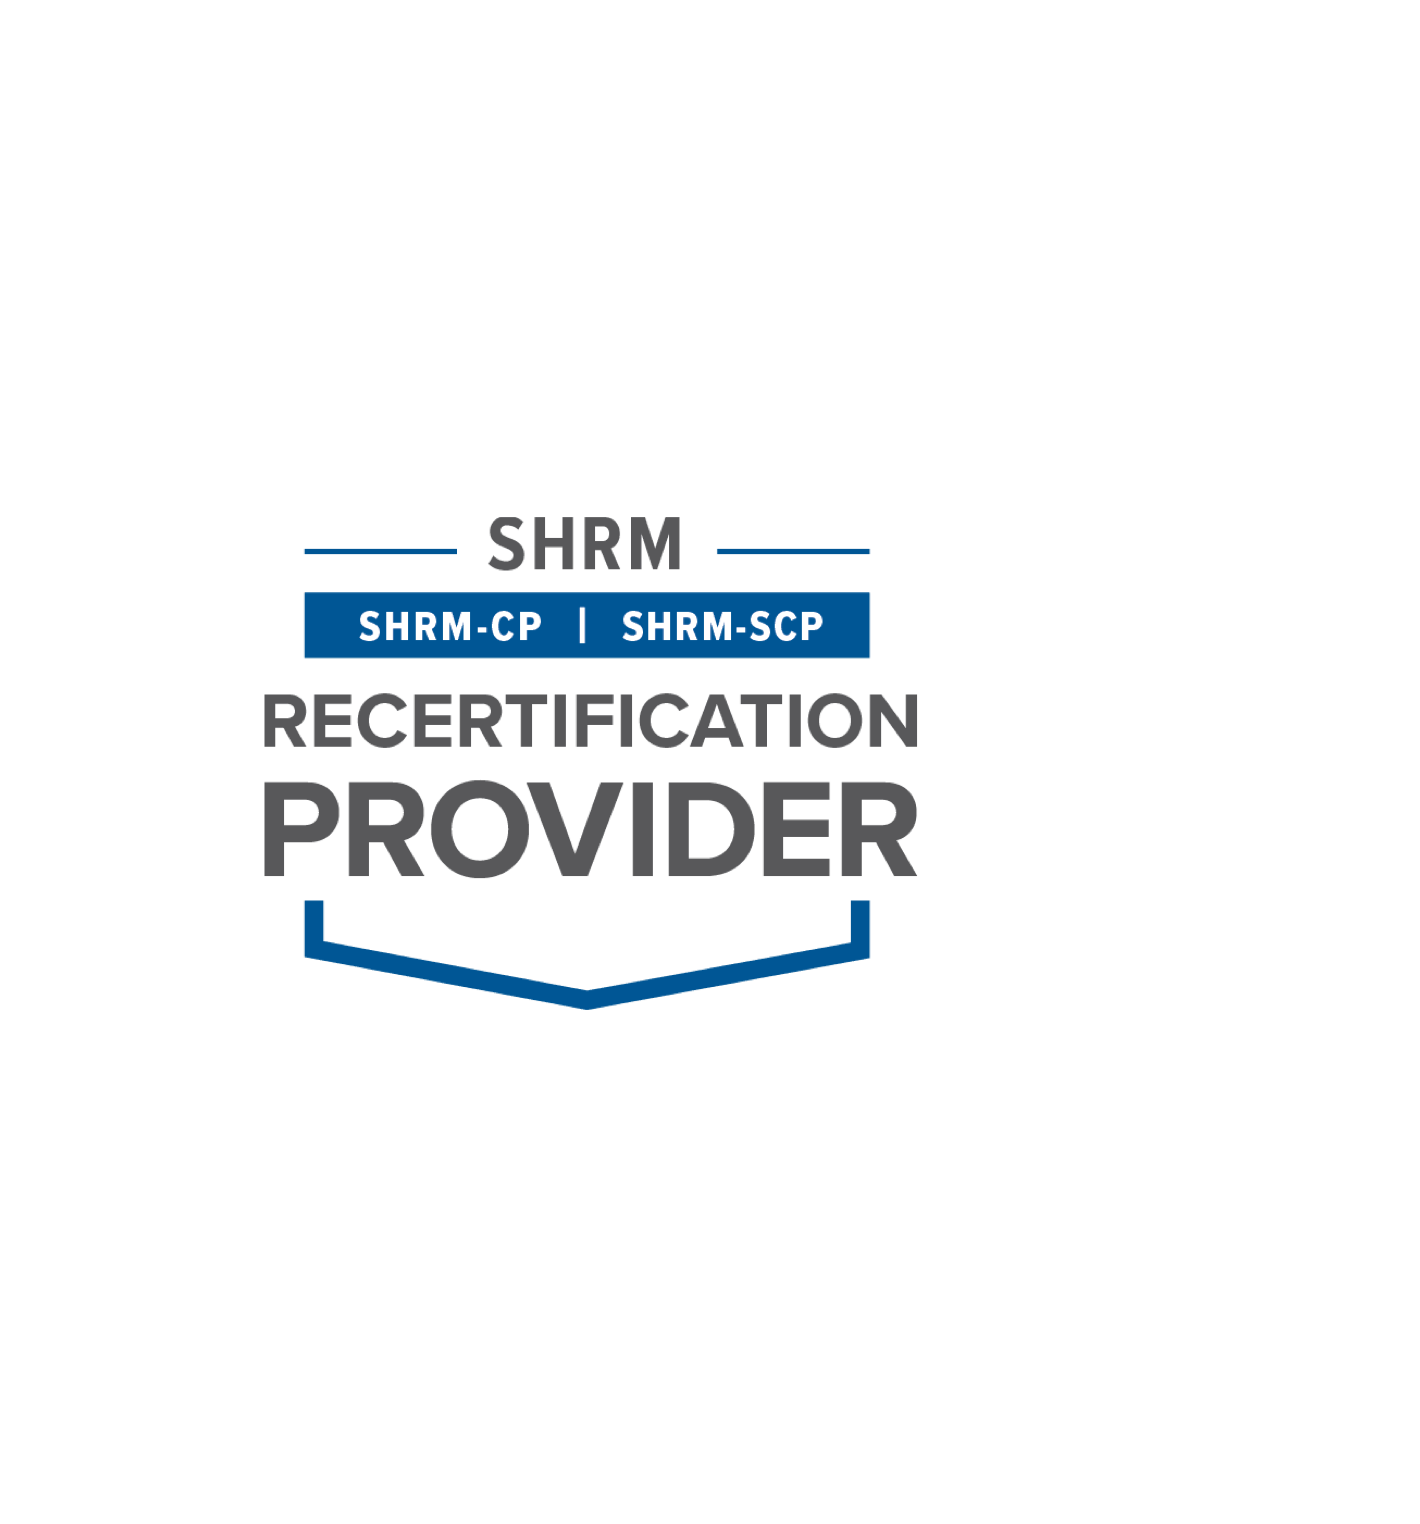 SHRM Recertification Provider Logo